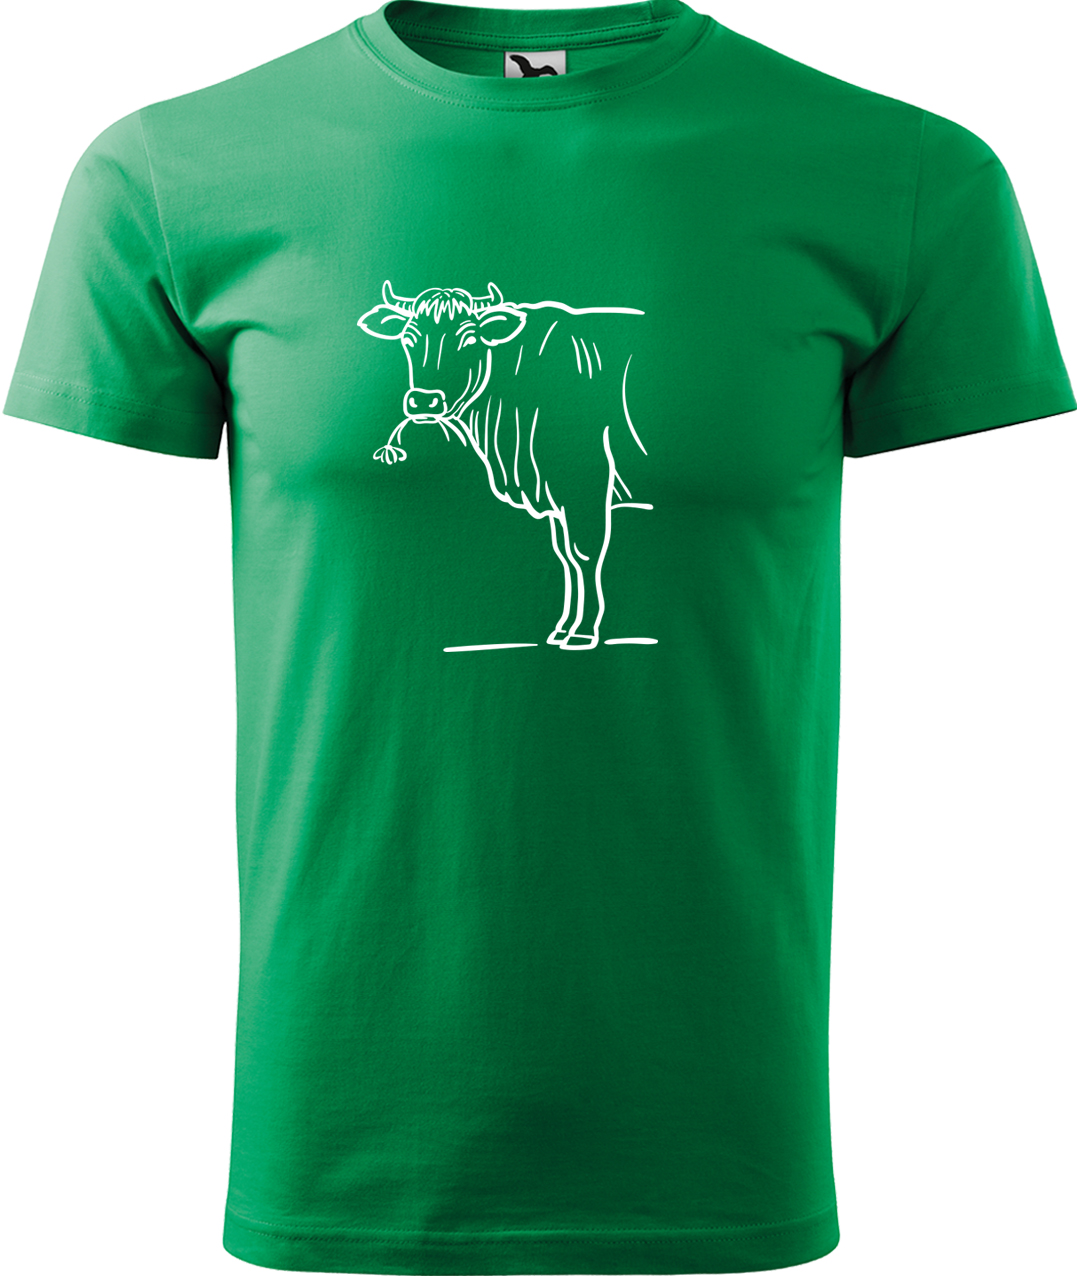 Pánské tričko s krávou - Býk Velikost: M, Barva: Středně zelená (16), Střih: pánský